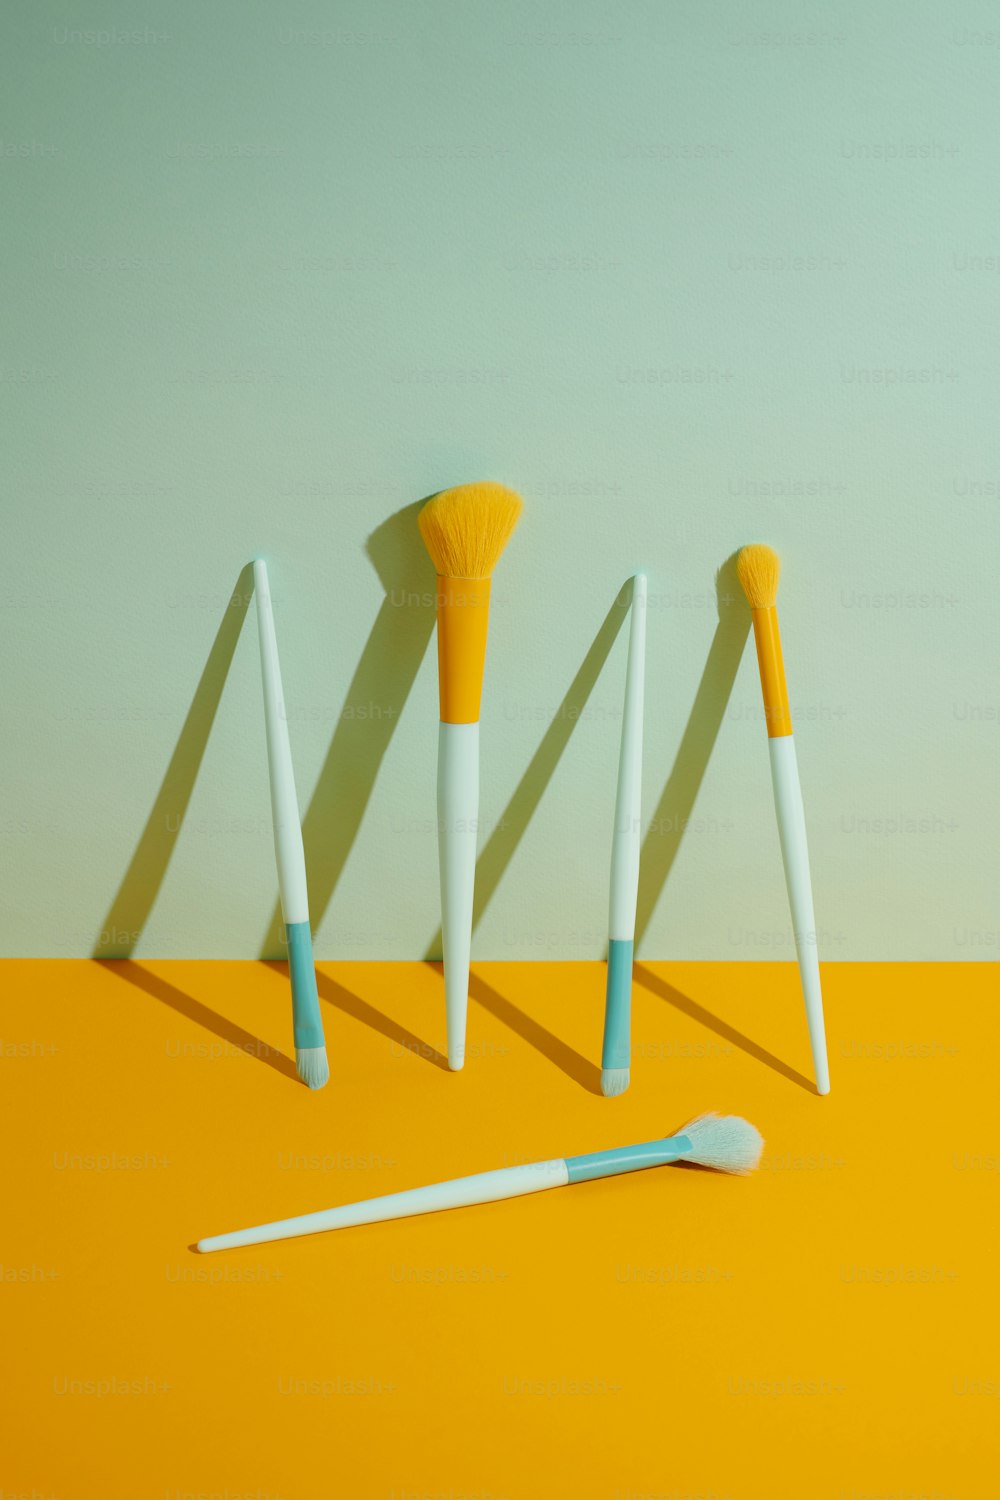 黄色いテーブルの上に座っている3本の歯ブラシのグループ